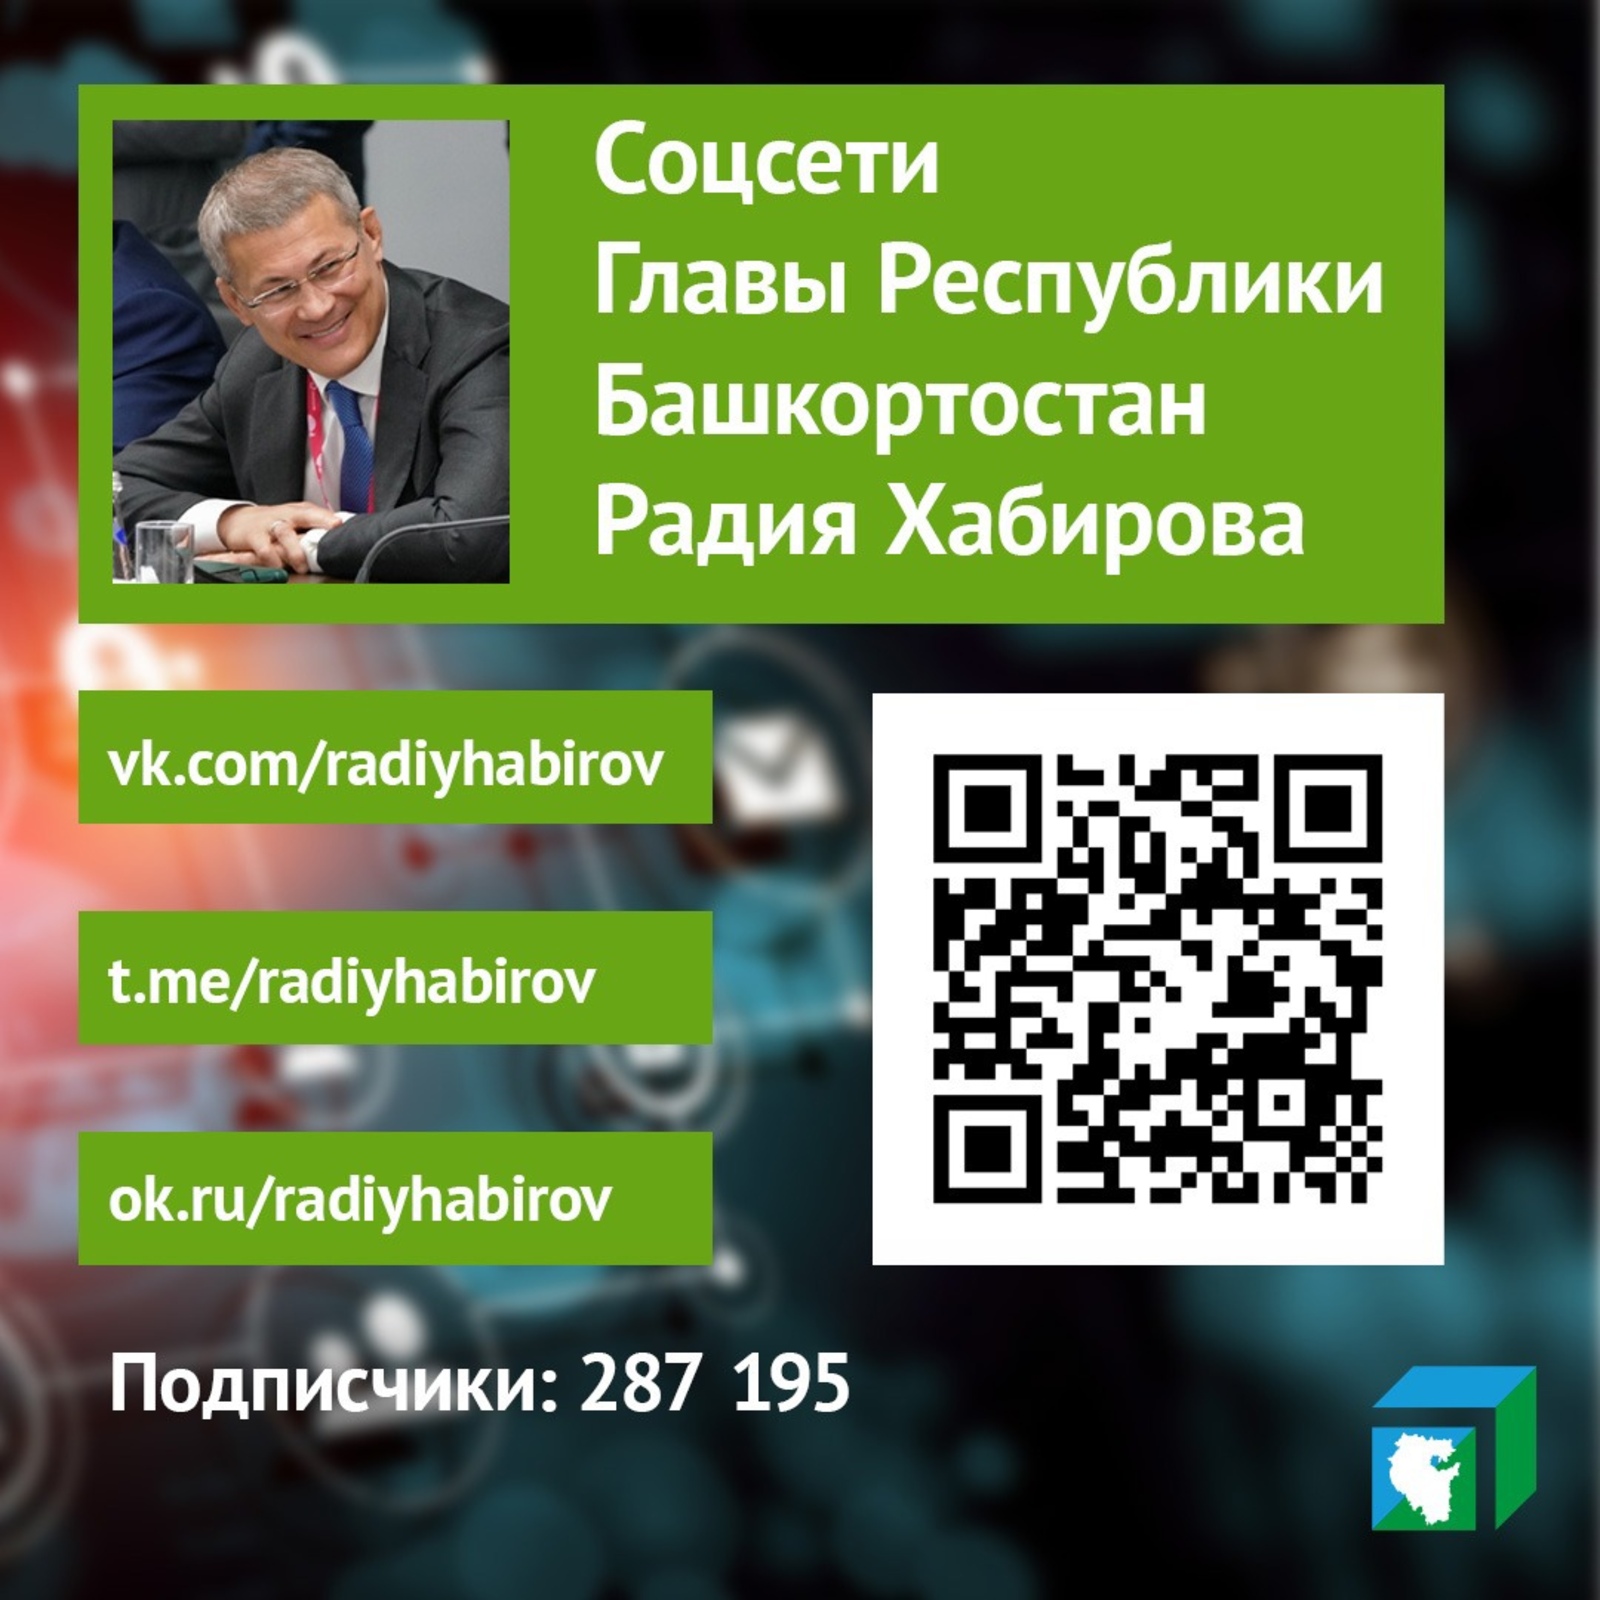 У Главы Башкортостана Радия Хабирова есть страницы в соцсетях “ВКонтакте” и “Одноклассниках” и свой телеграм-канал